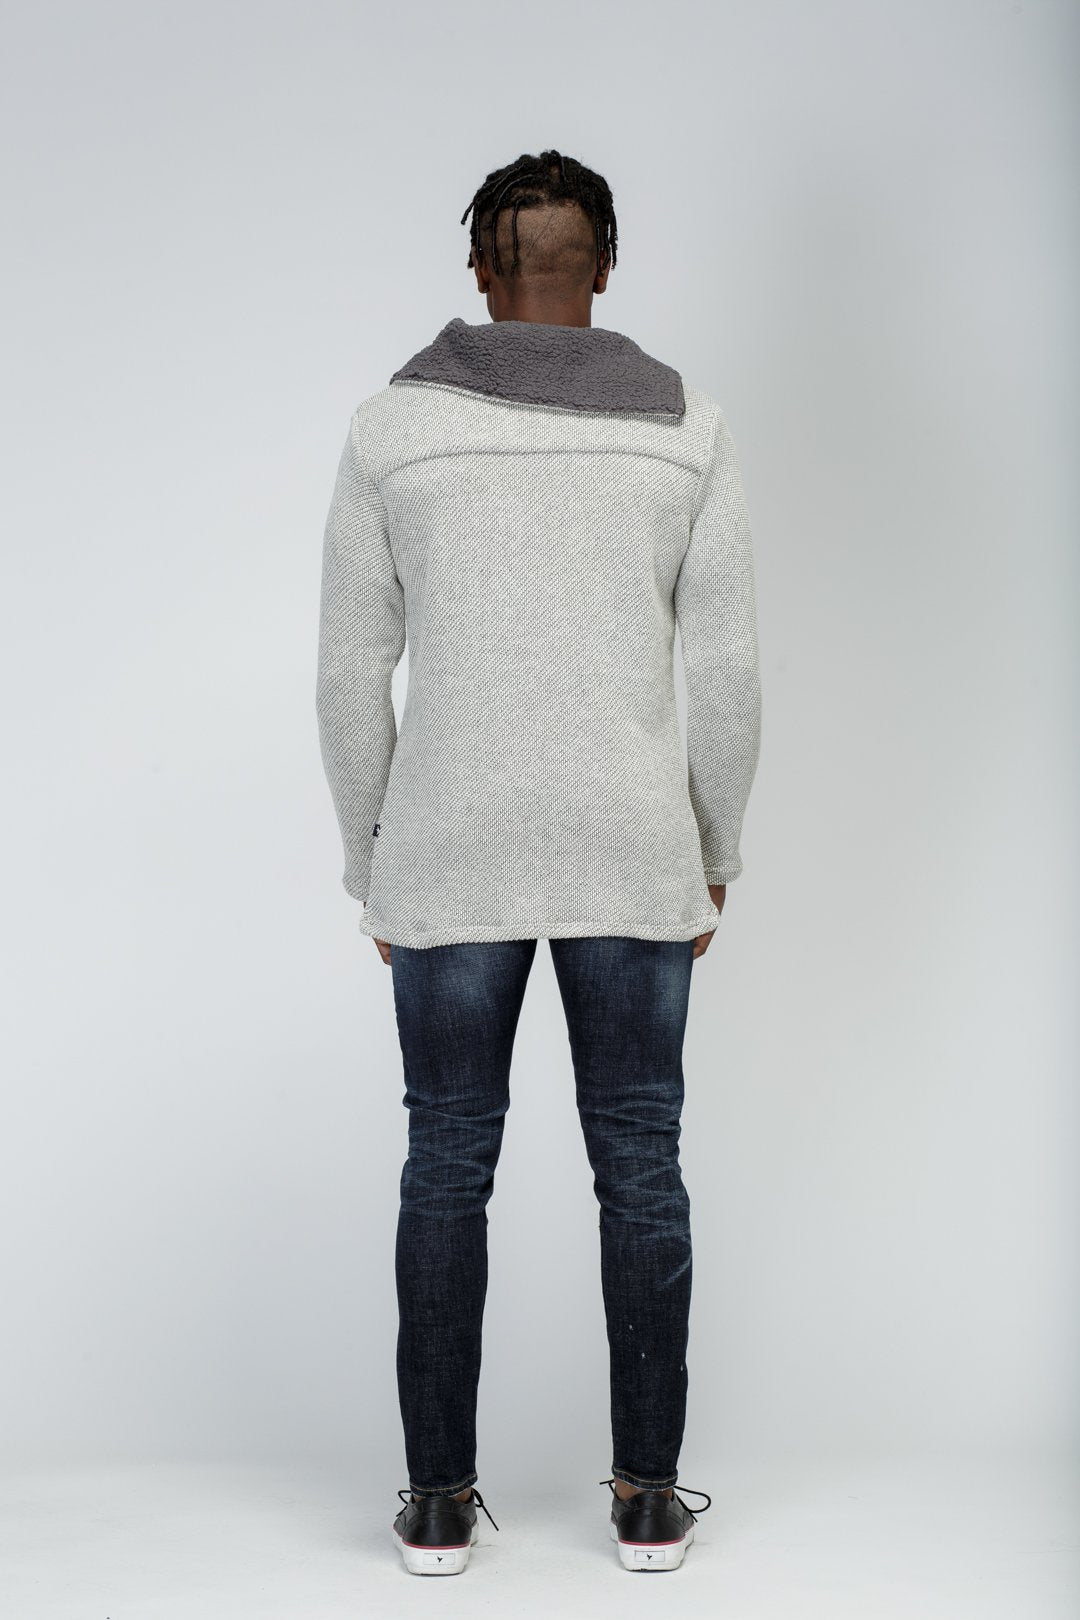 Konus Men's Side Zip Turtle Neck Sweater in Grey